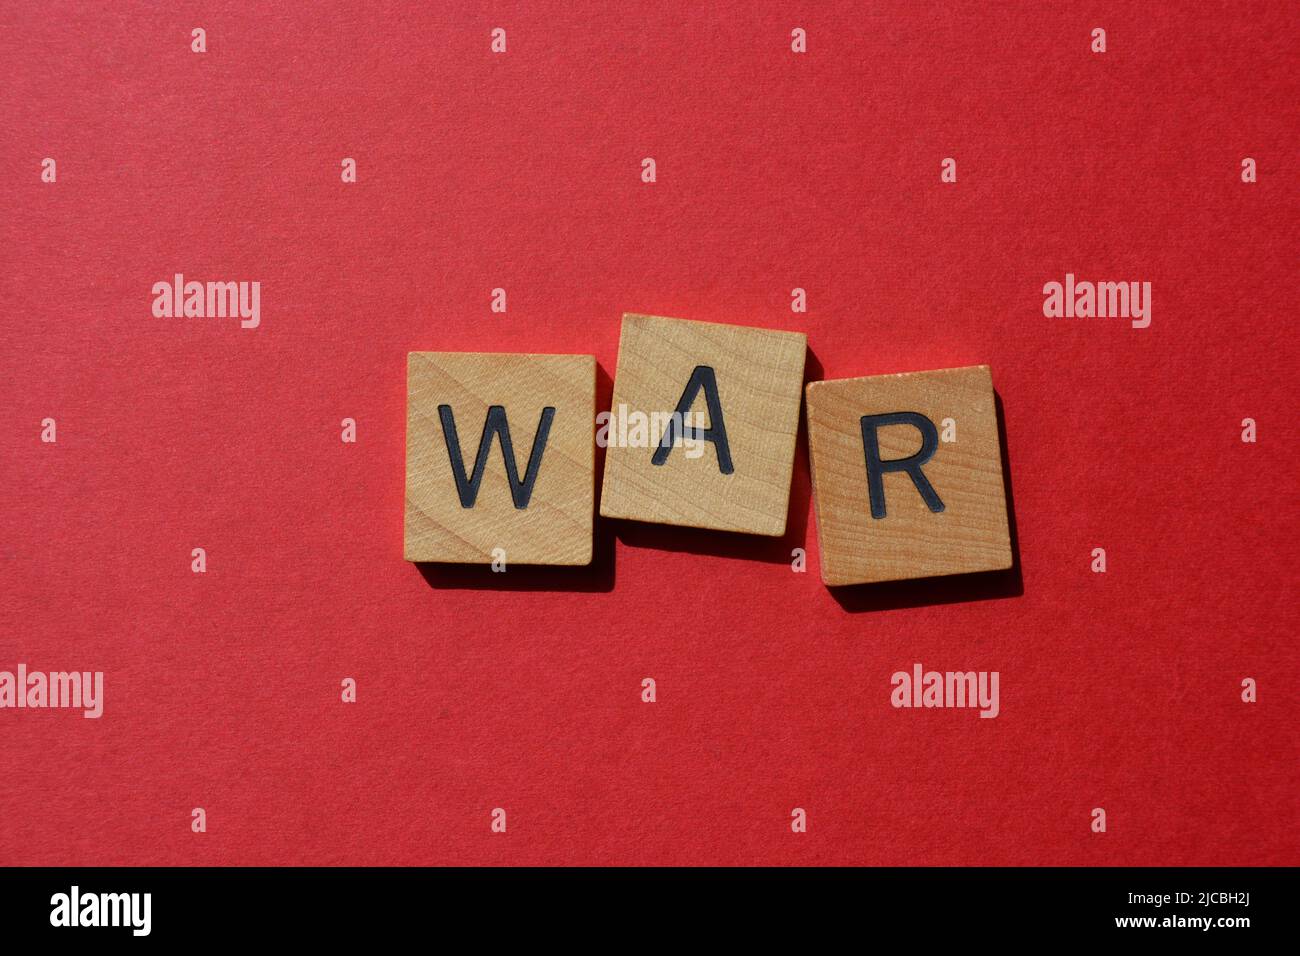 Guerra, palabra en letras del alfabeto de madera aisladas sobre fondo rojo brillante Foto de stock